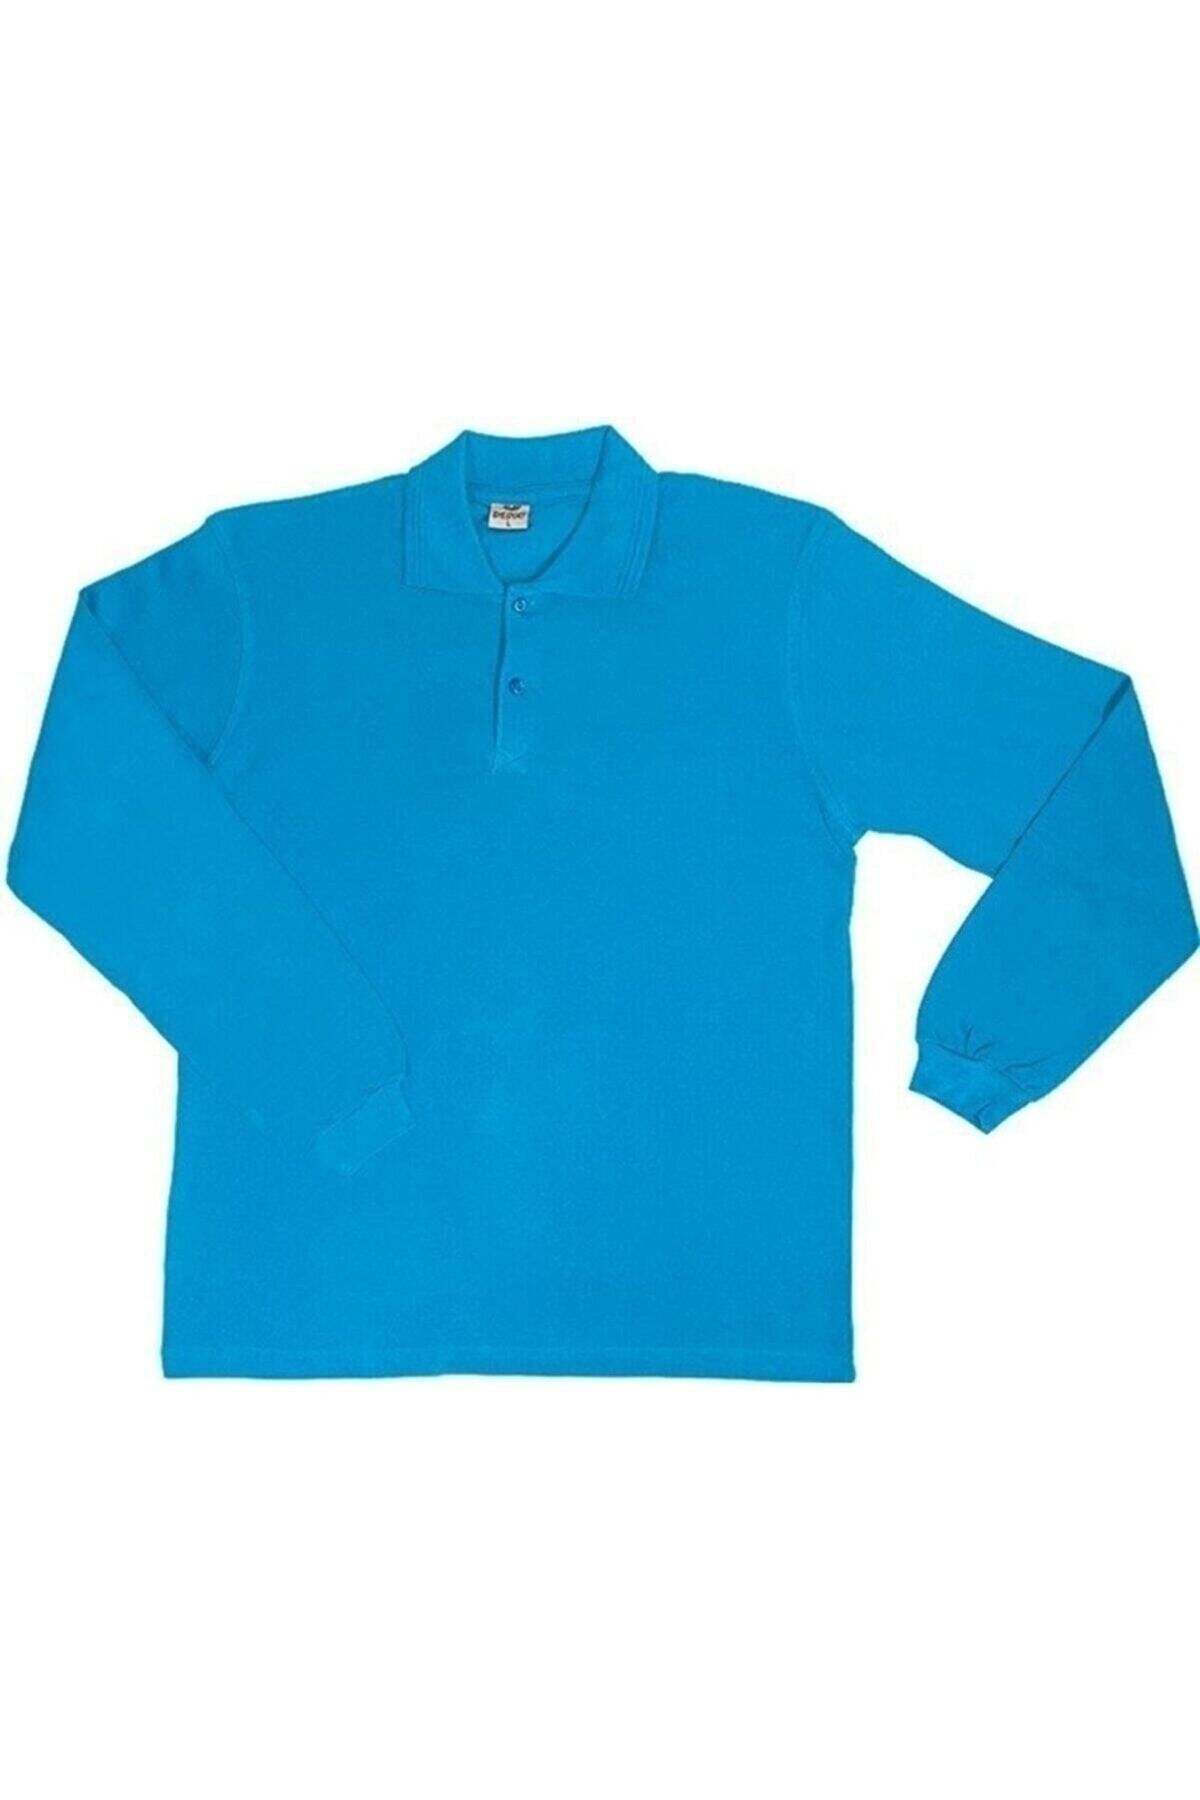 Genel Markalar Polo Yaka Kısa Kollu Unısex Okul Tişörtü Gösteri Kıyafeti Günlük Kıyafet Çocuk/yetişkin